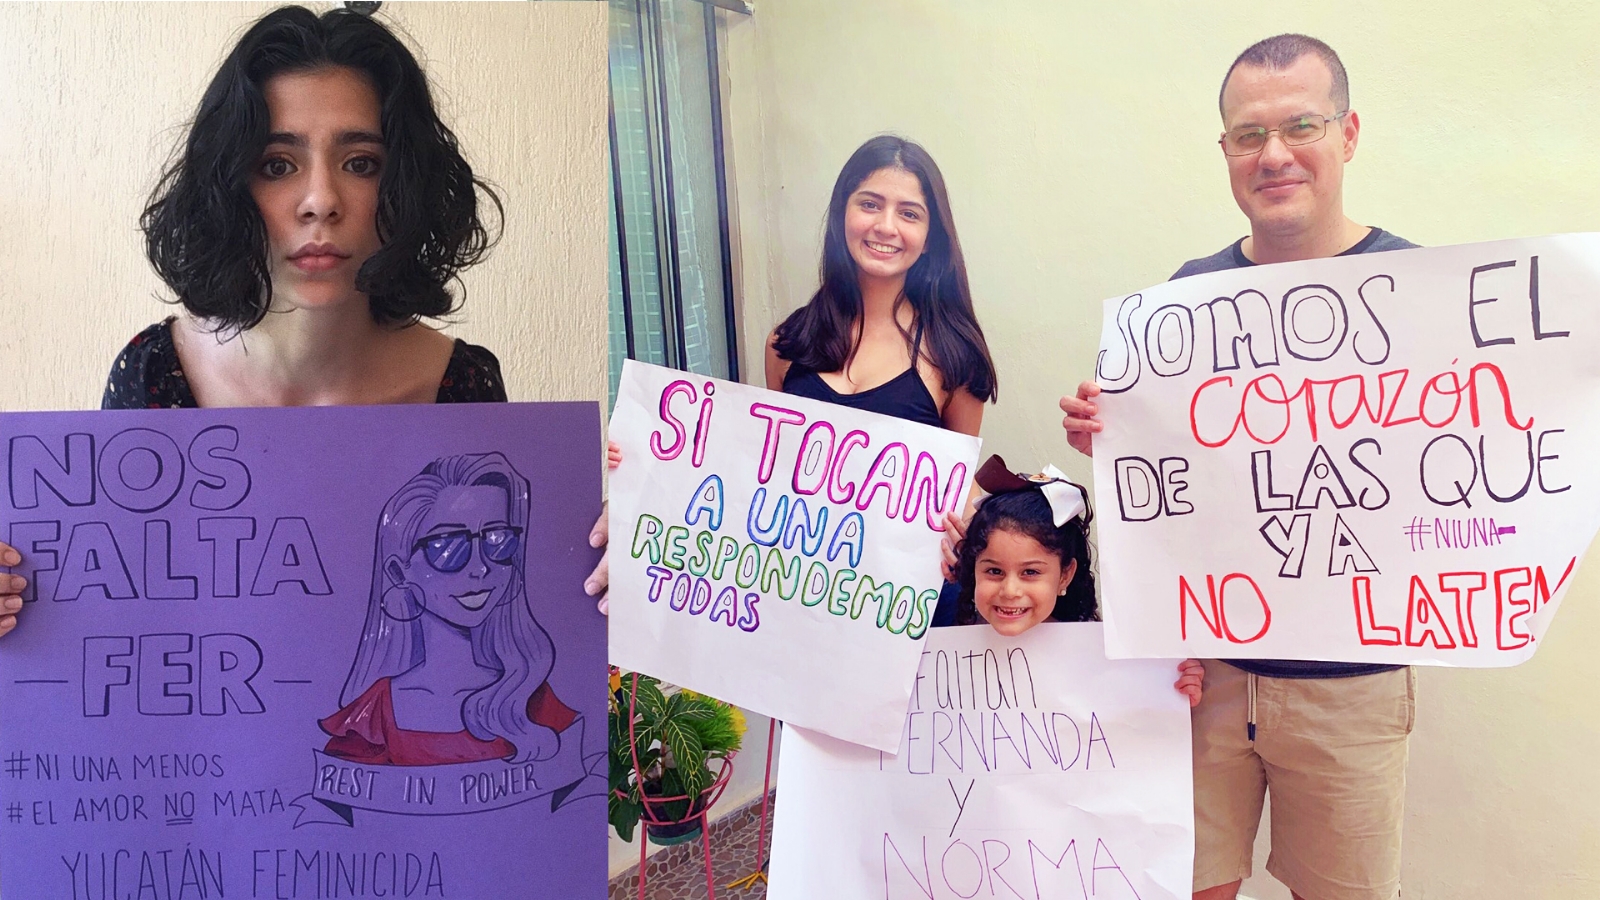 #NosFaltaFernanda, de forma virtual se unen a la protesta contra los feminicidios en Yucatán